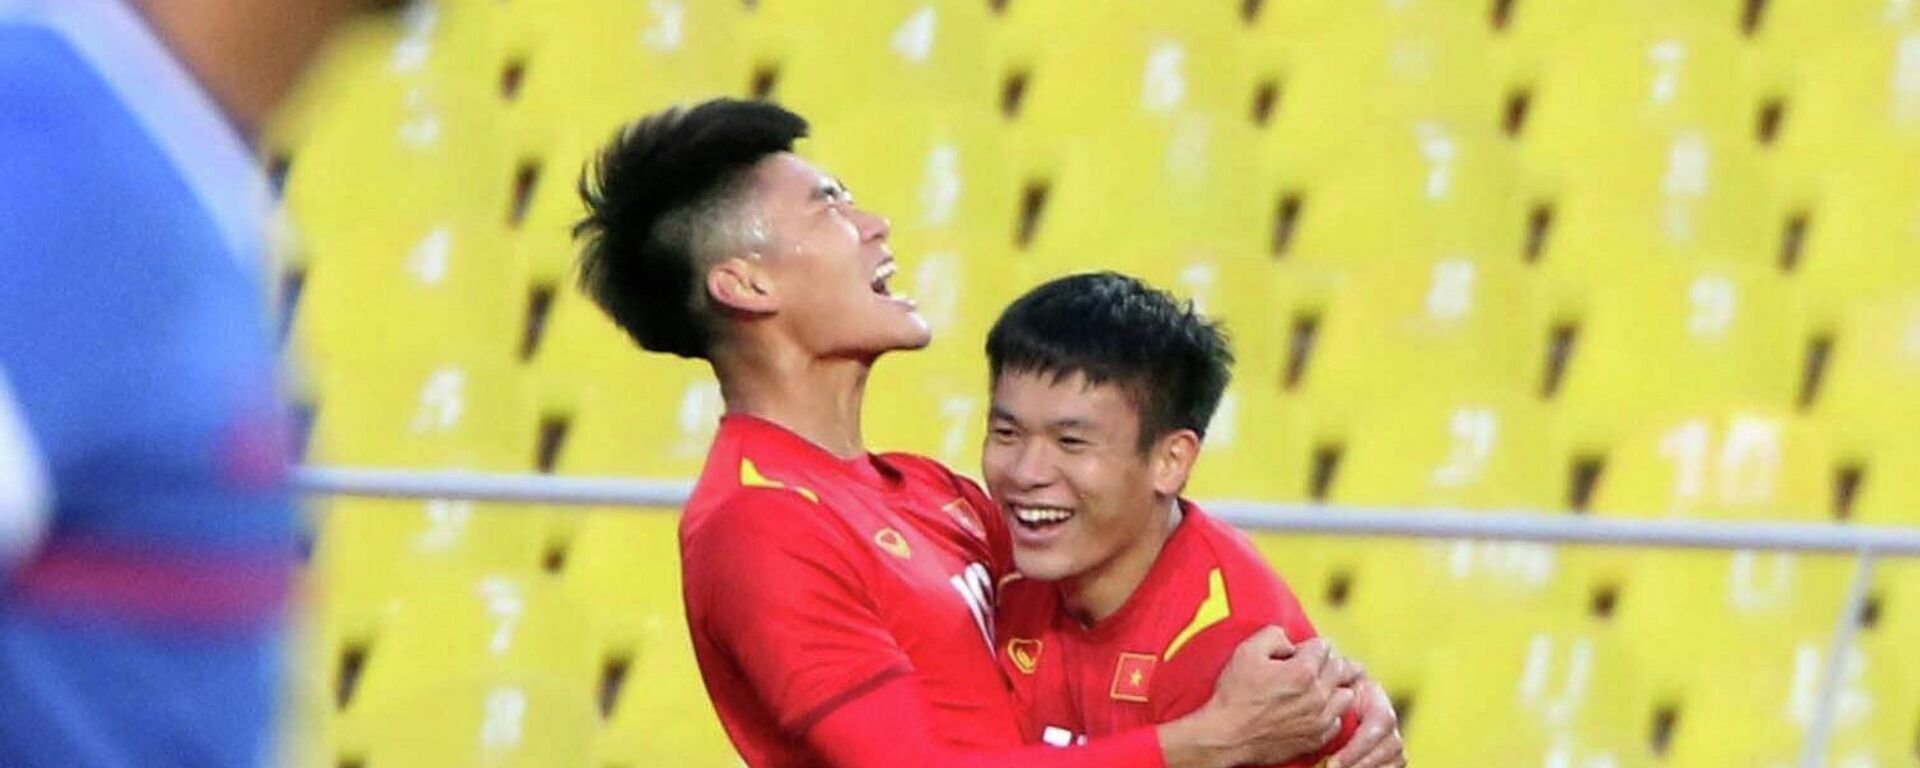 Các cầu thủ U23 Việt Nam ăn mừng bàn thắng mở tỉ số trận đấu - Sputnik Việt Nam, 1920, 02.11.2021